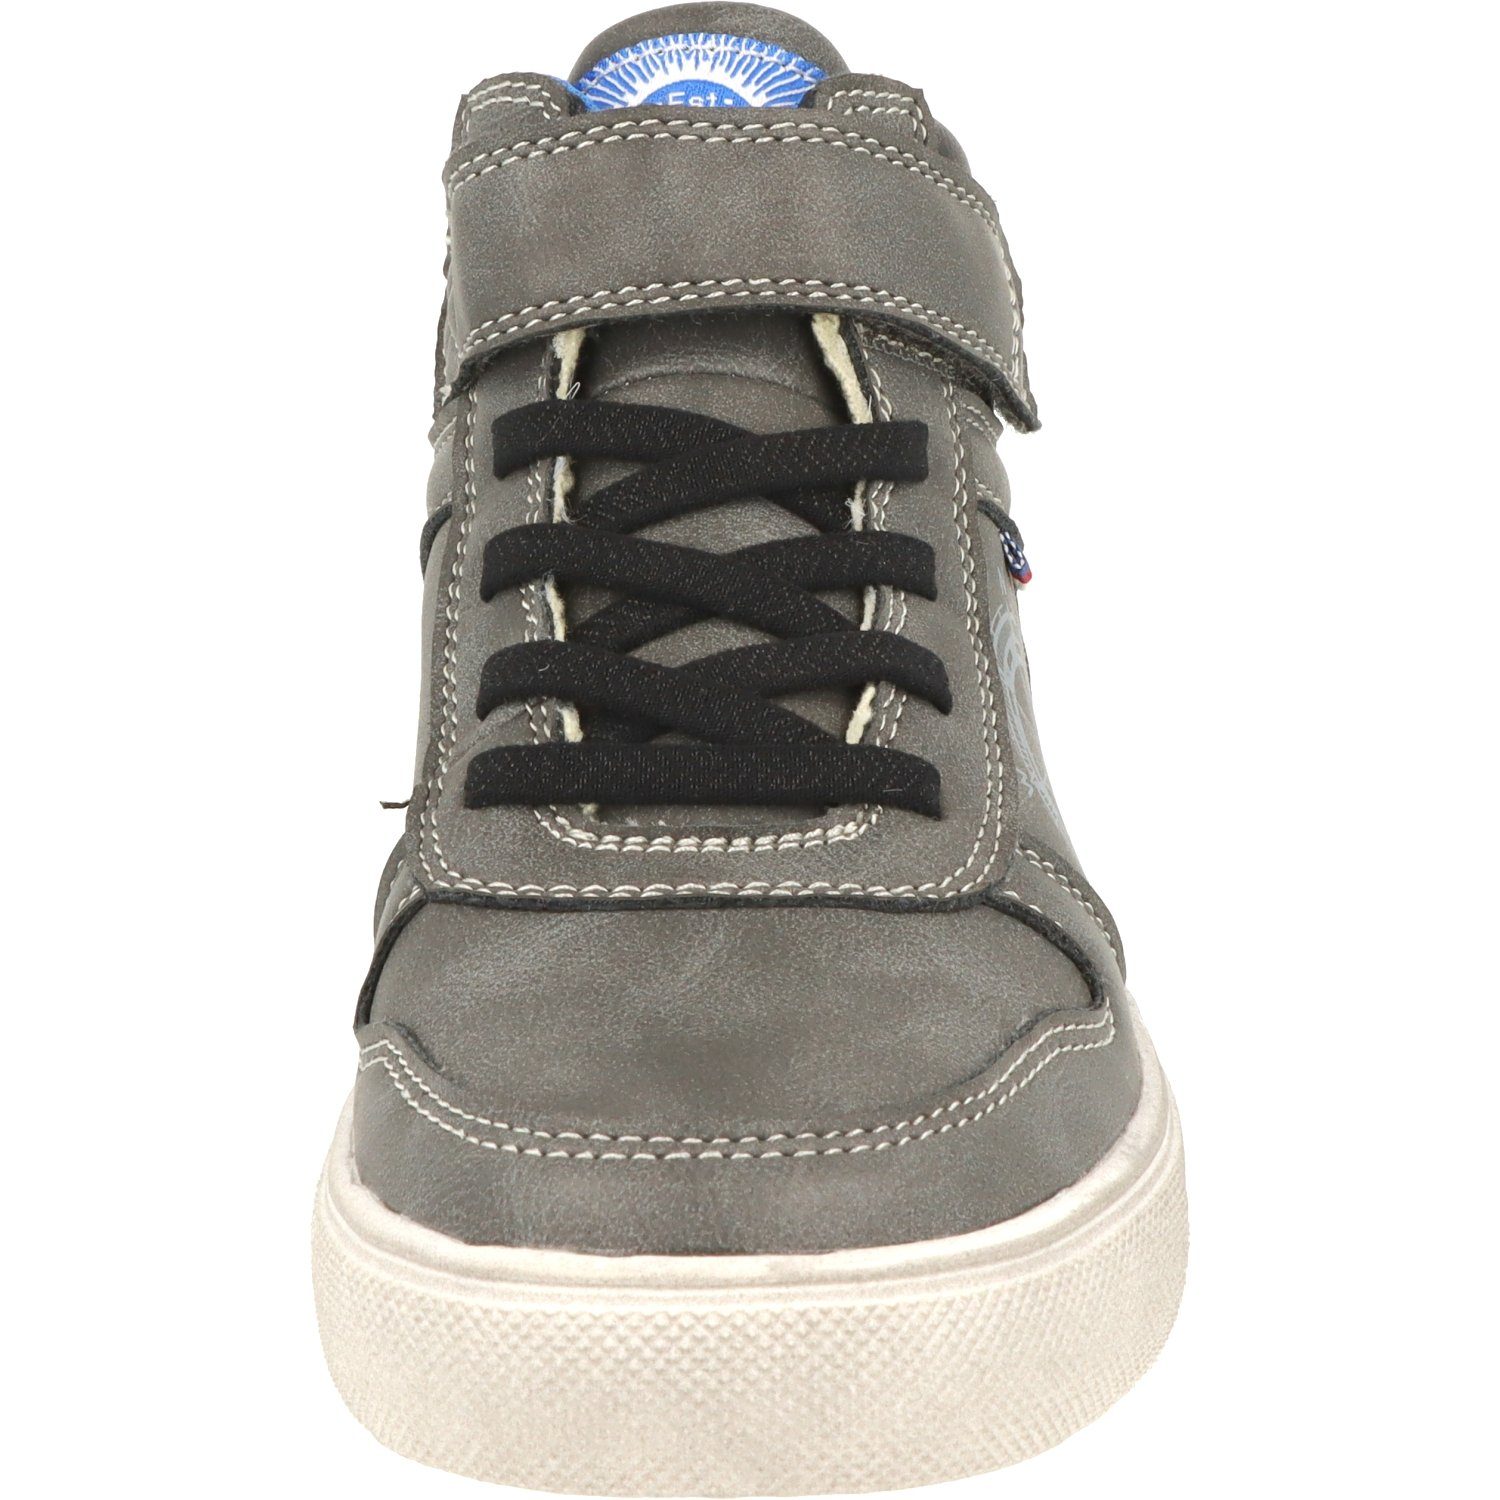 Schuhe Hi-Top Sneaker Wasserabweisend Dk.Grey 451-074 Indigo Jungen Schnürschuhe